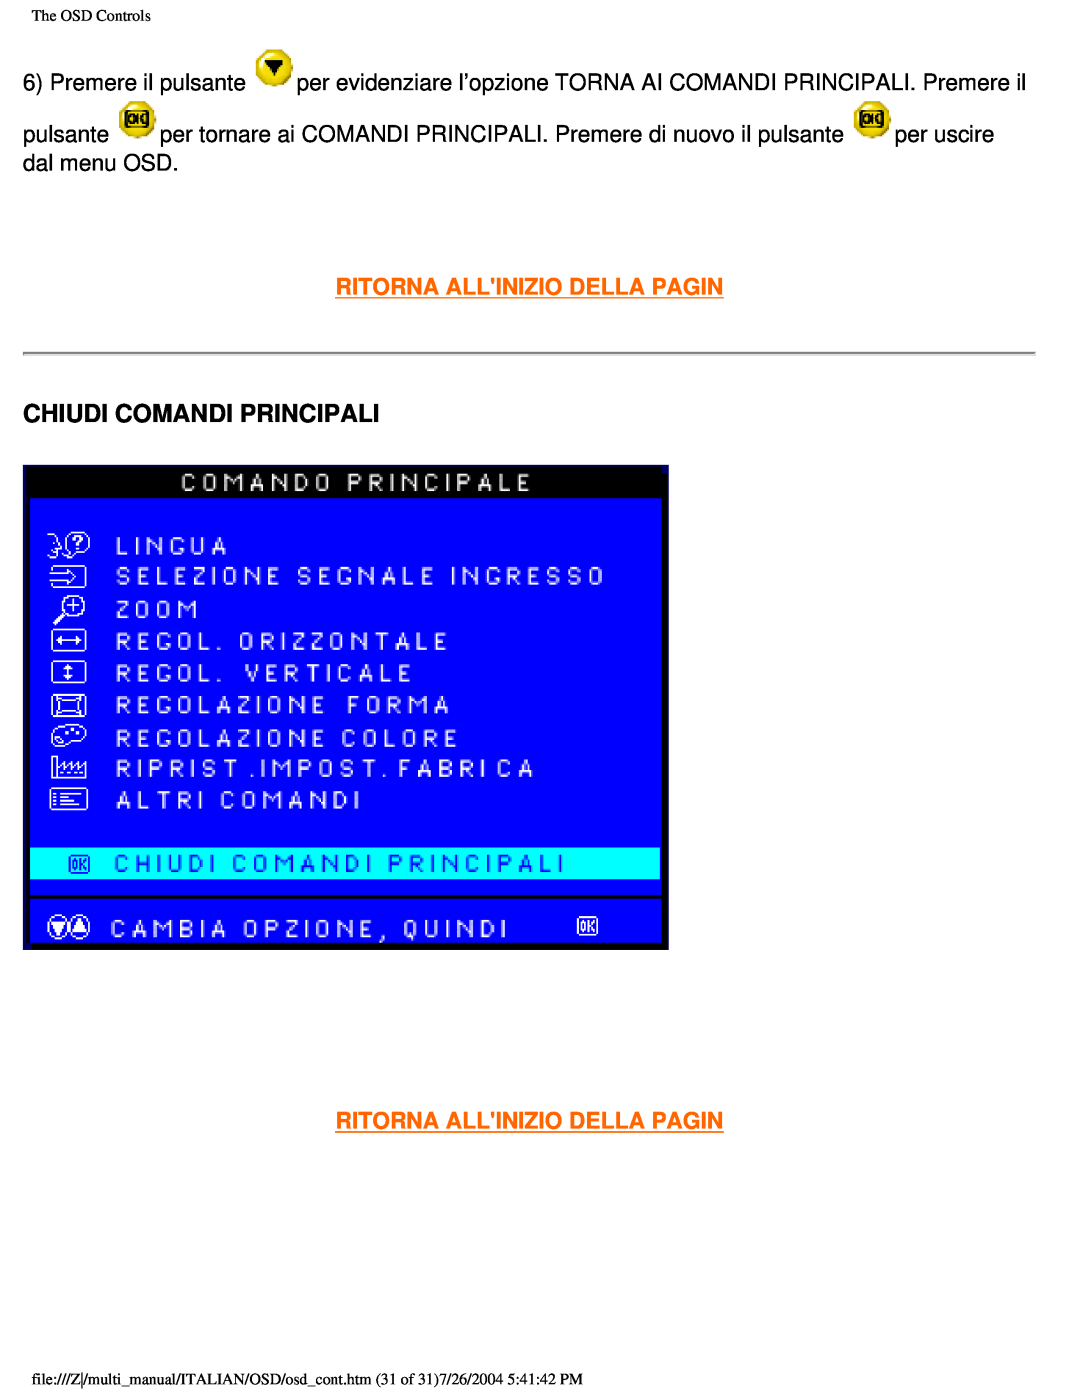 Philips 201B user manual Chiudi Comandi Principali, Ritorna Allinizio Della Pagin, The OSD Controls 